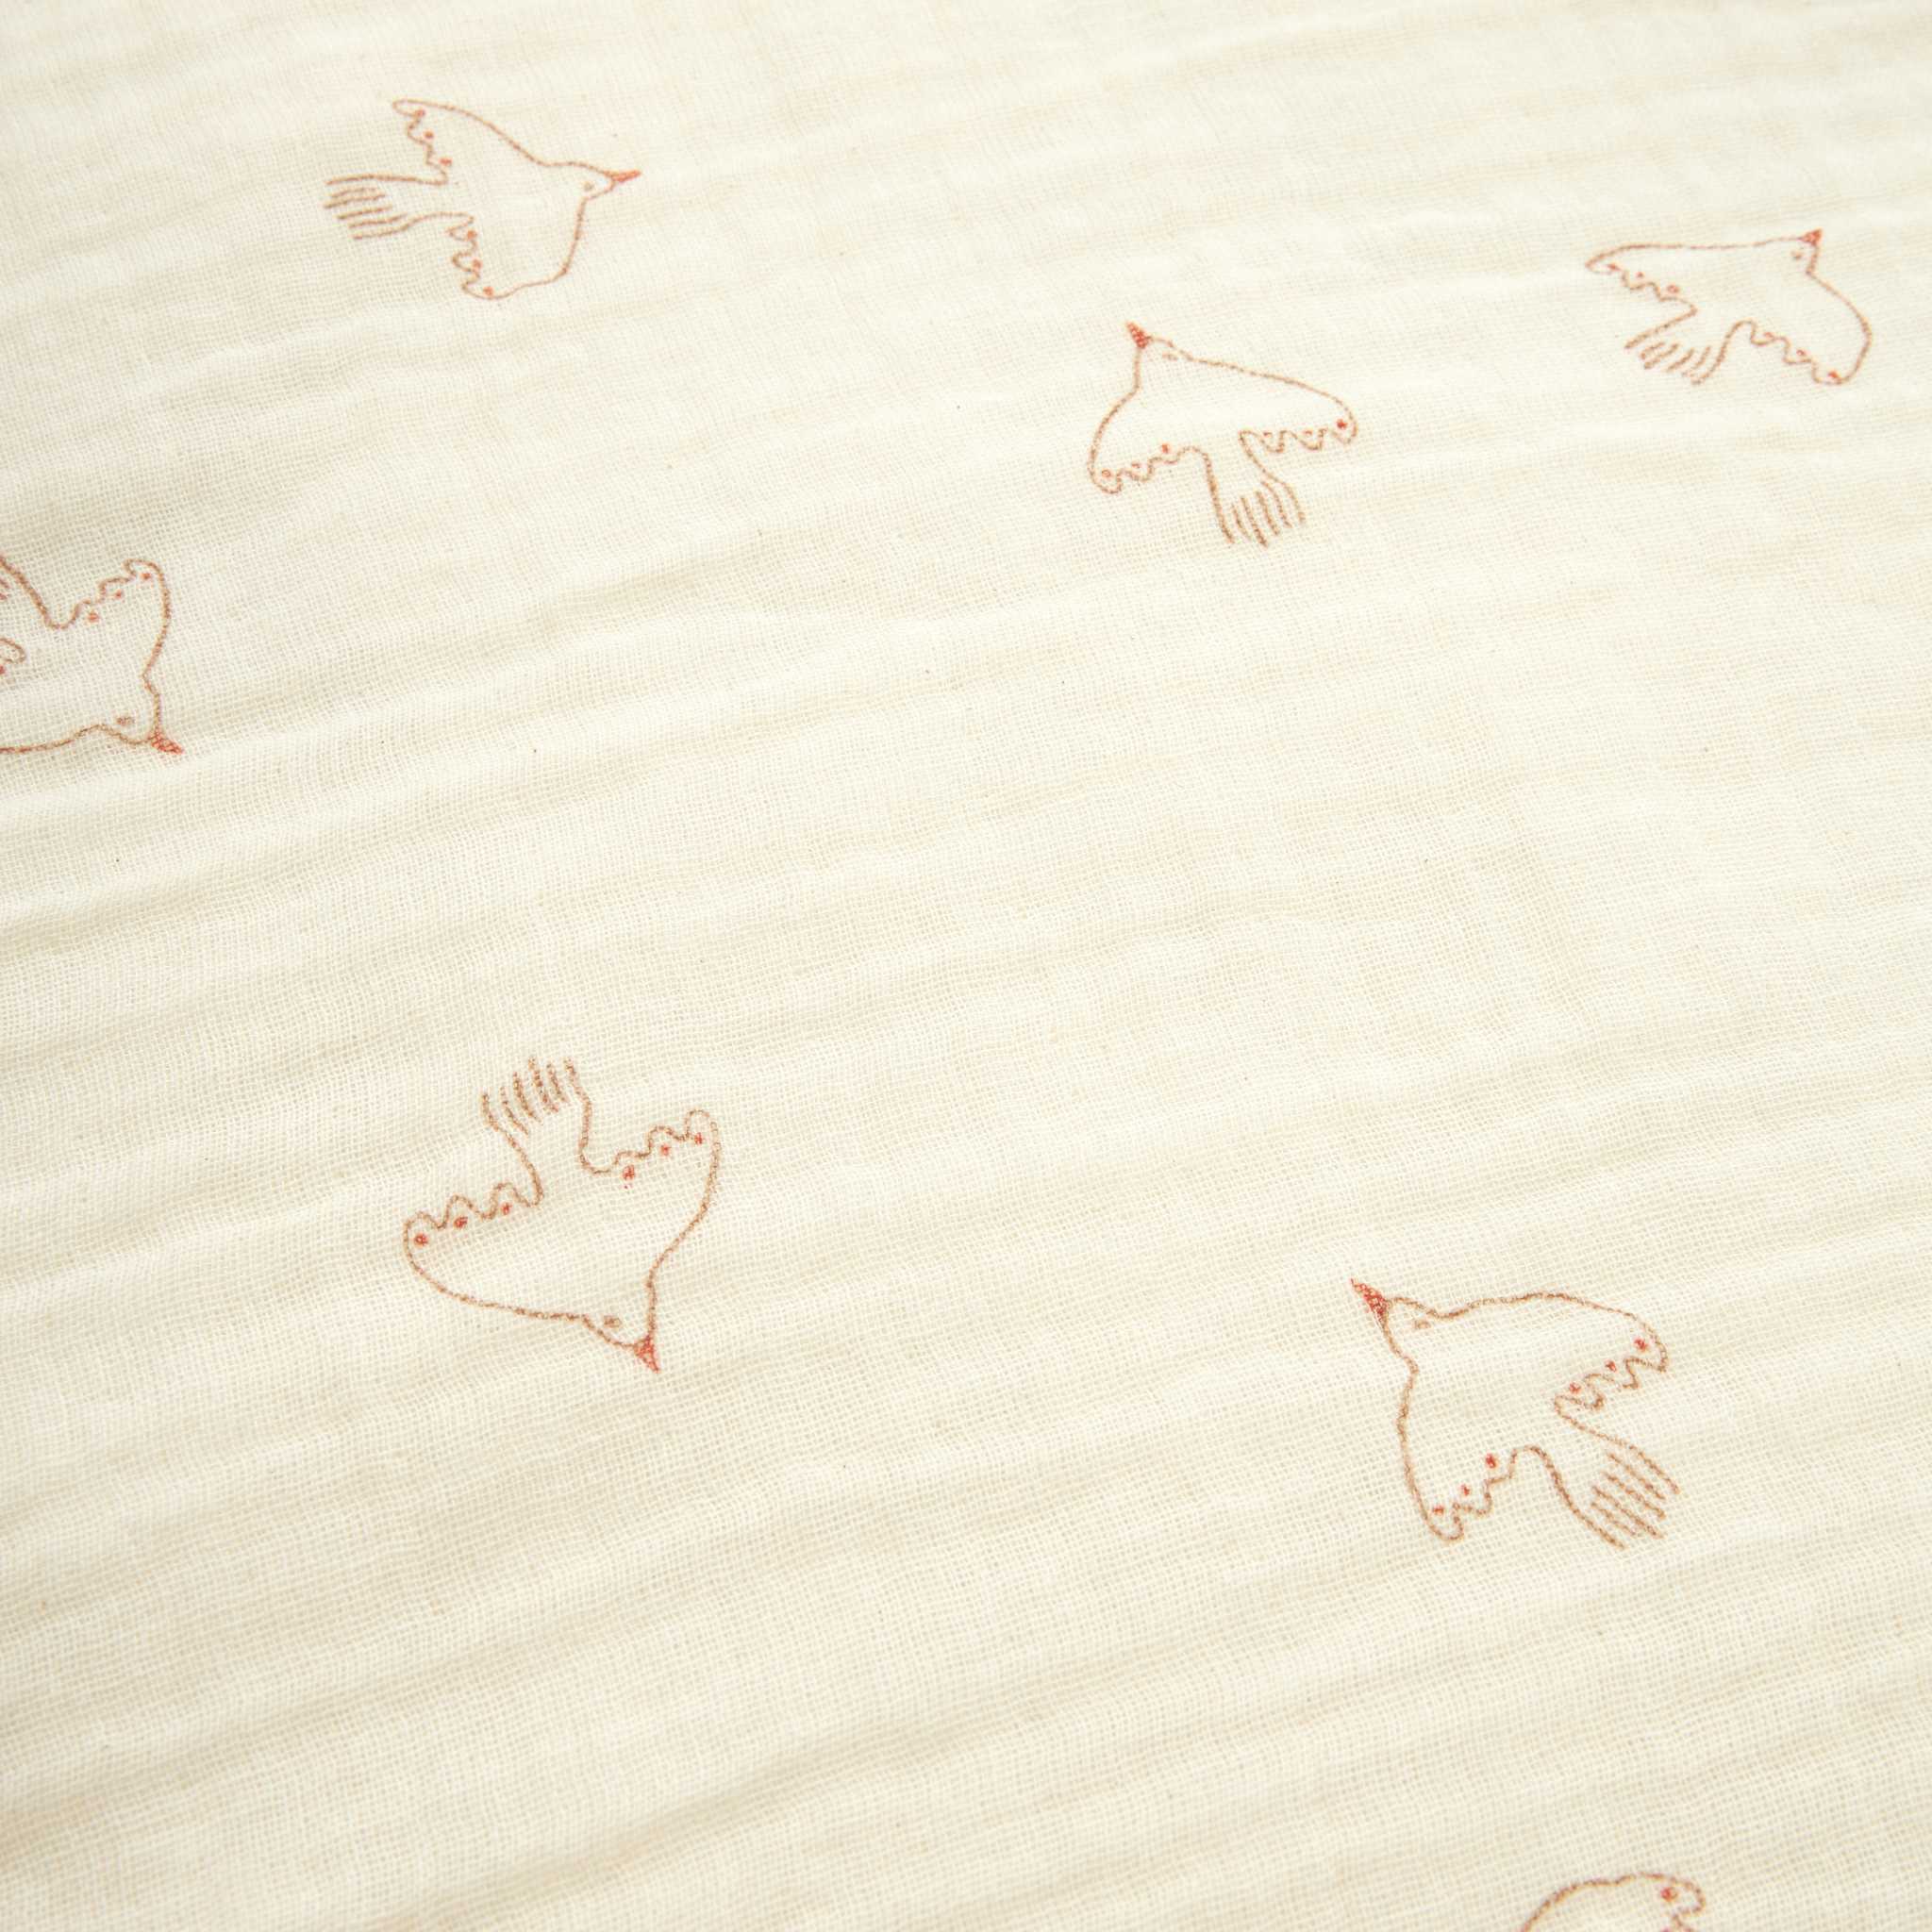 Nobodinoz Wabi Sabi Toddler Bedding Set - Brown Hoshi Birds - Close Up Pattern